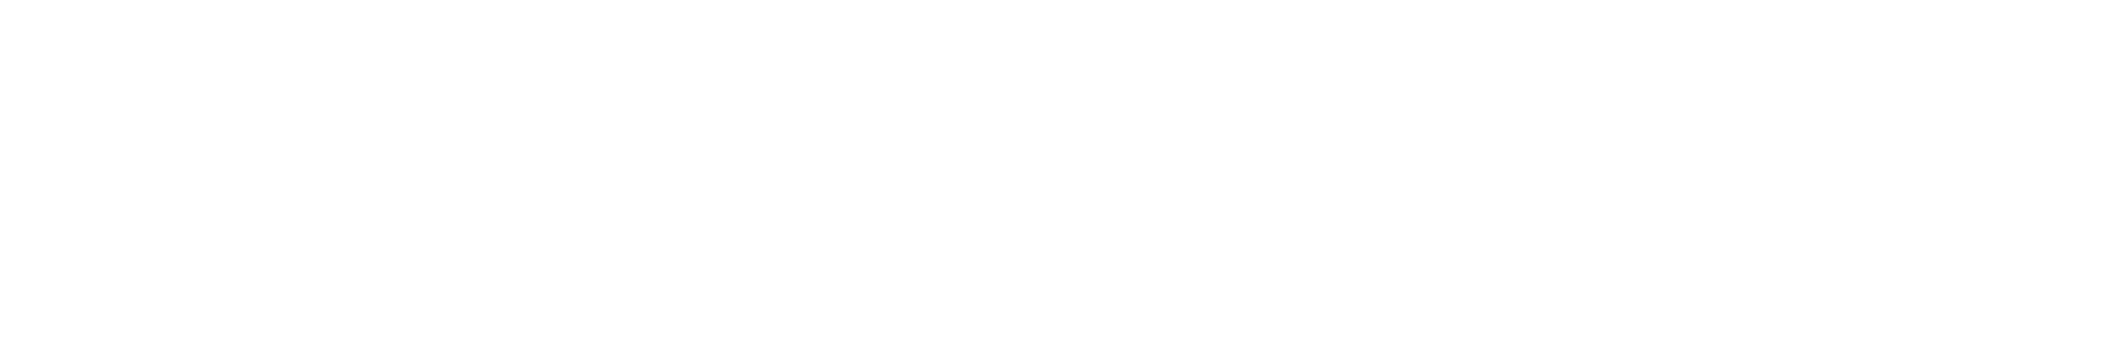 OSSETIA logo_white